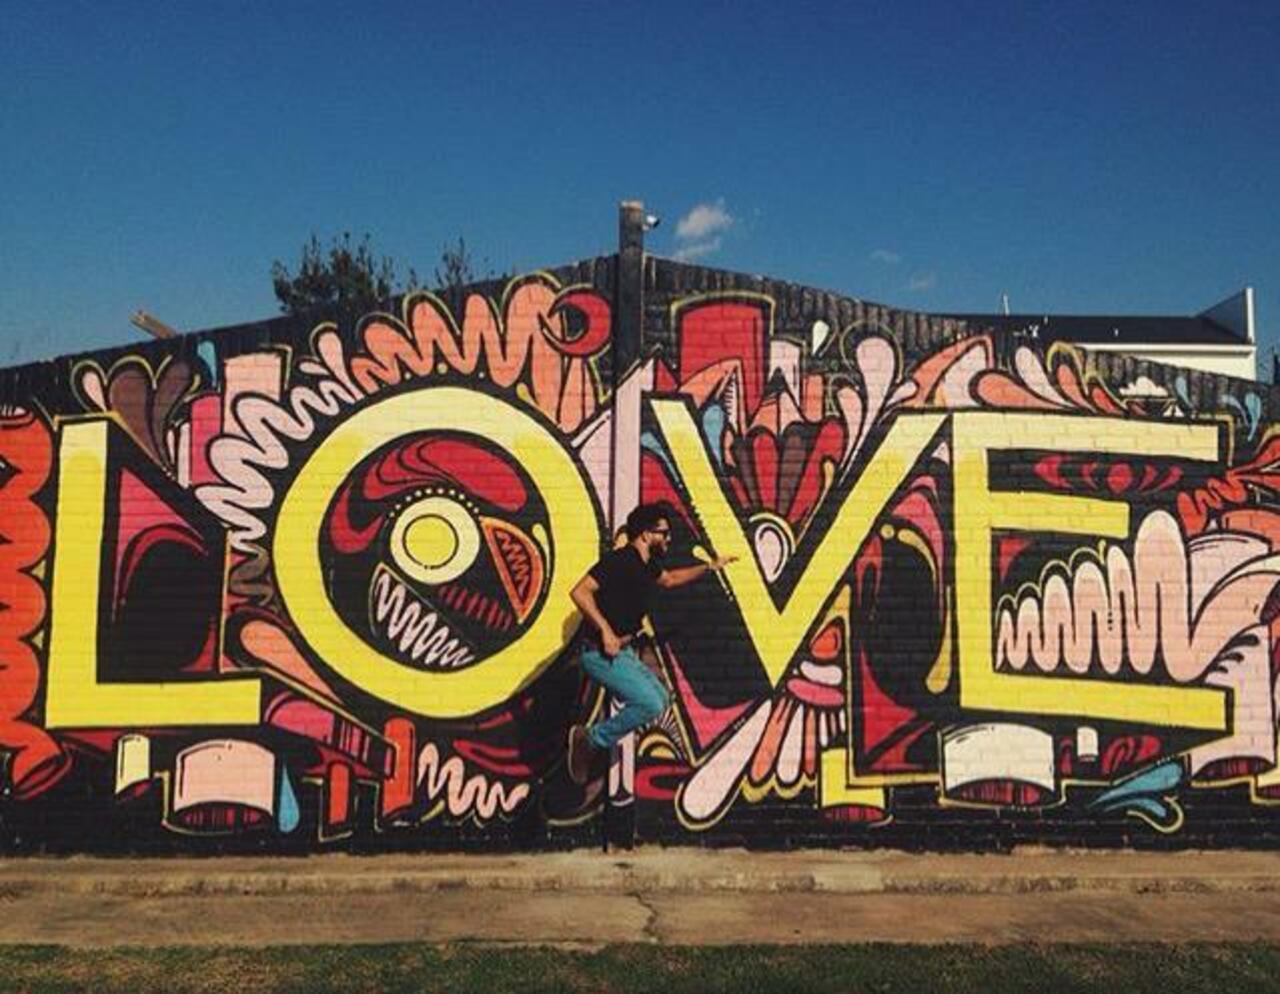 Love ❤️
Street Art by WileyArt

#art #graffiti #mural #streetart http://t.co/cMndQKZQzb